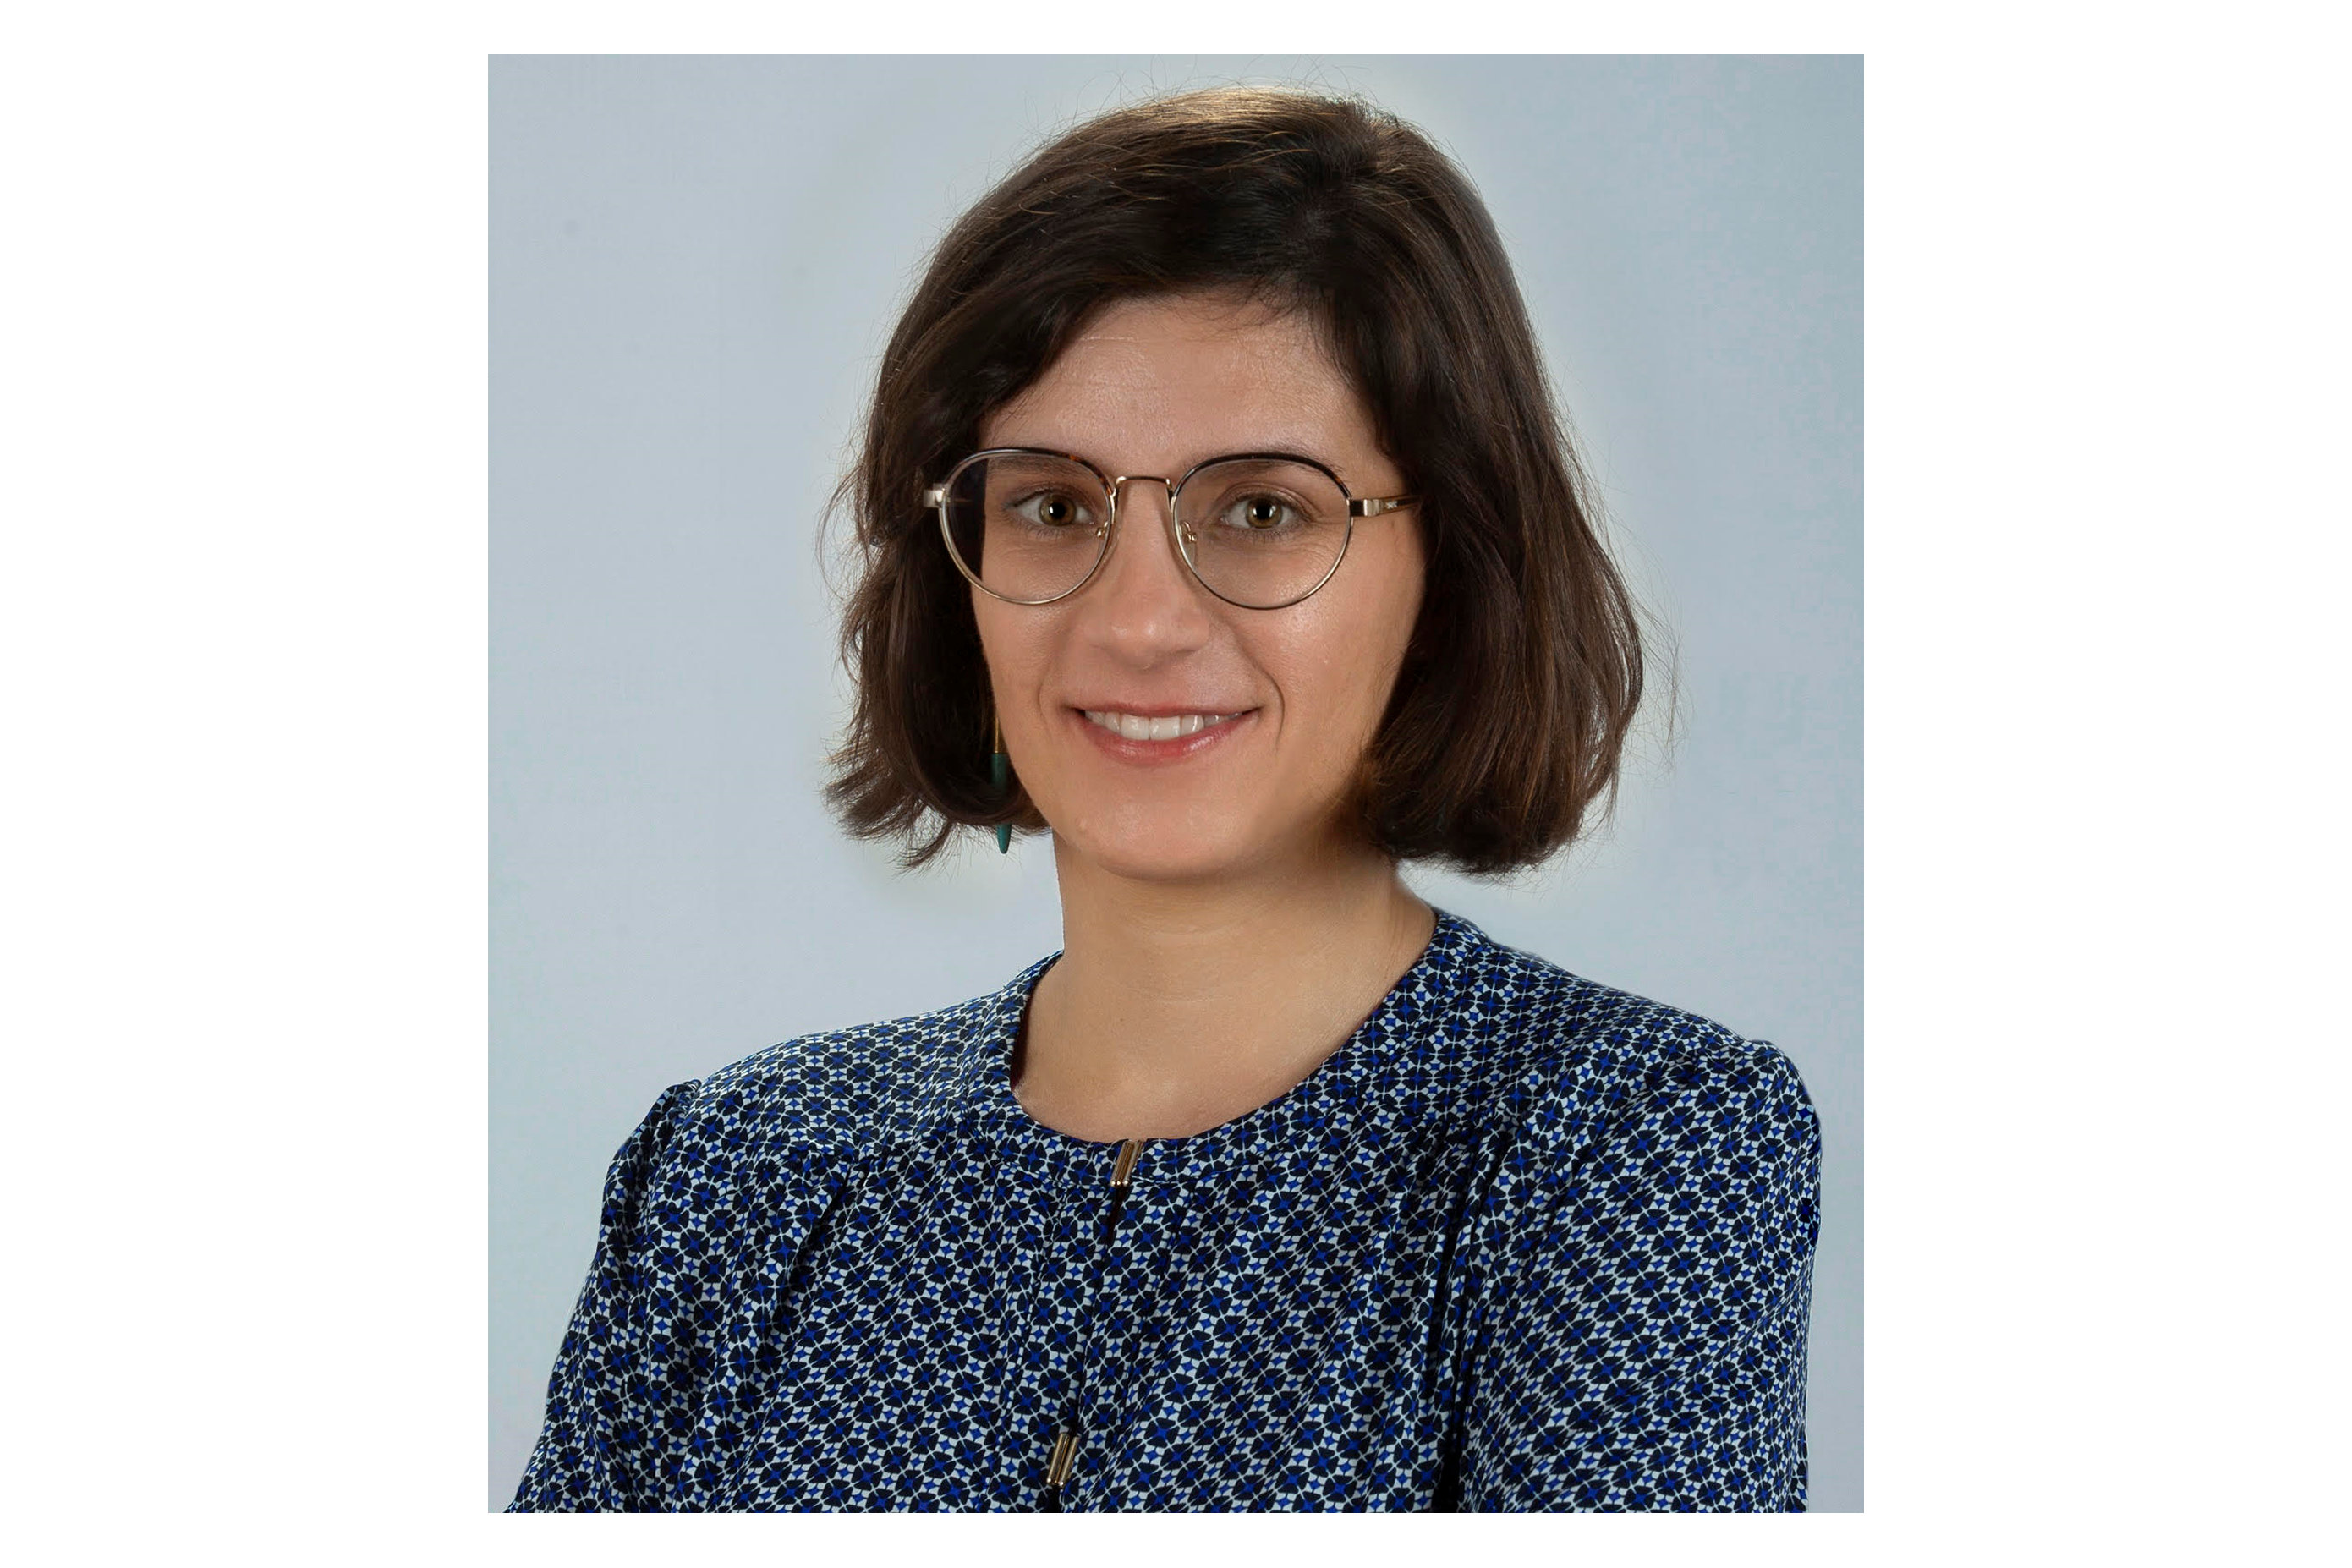 Microviable da la bienvenida a Pilar Manrique, PhD, nueva científica investigadora en el equipo